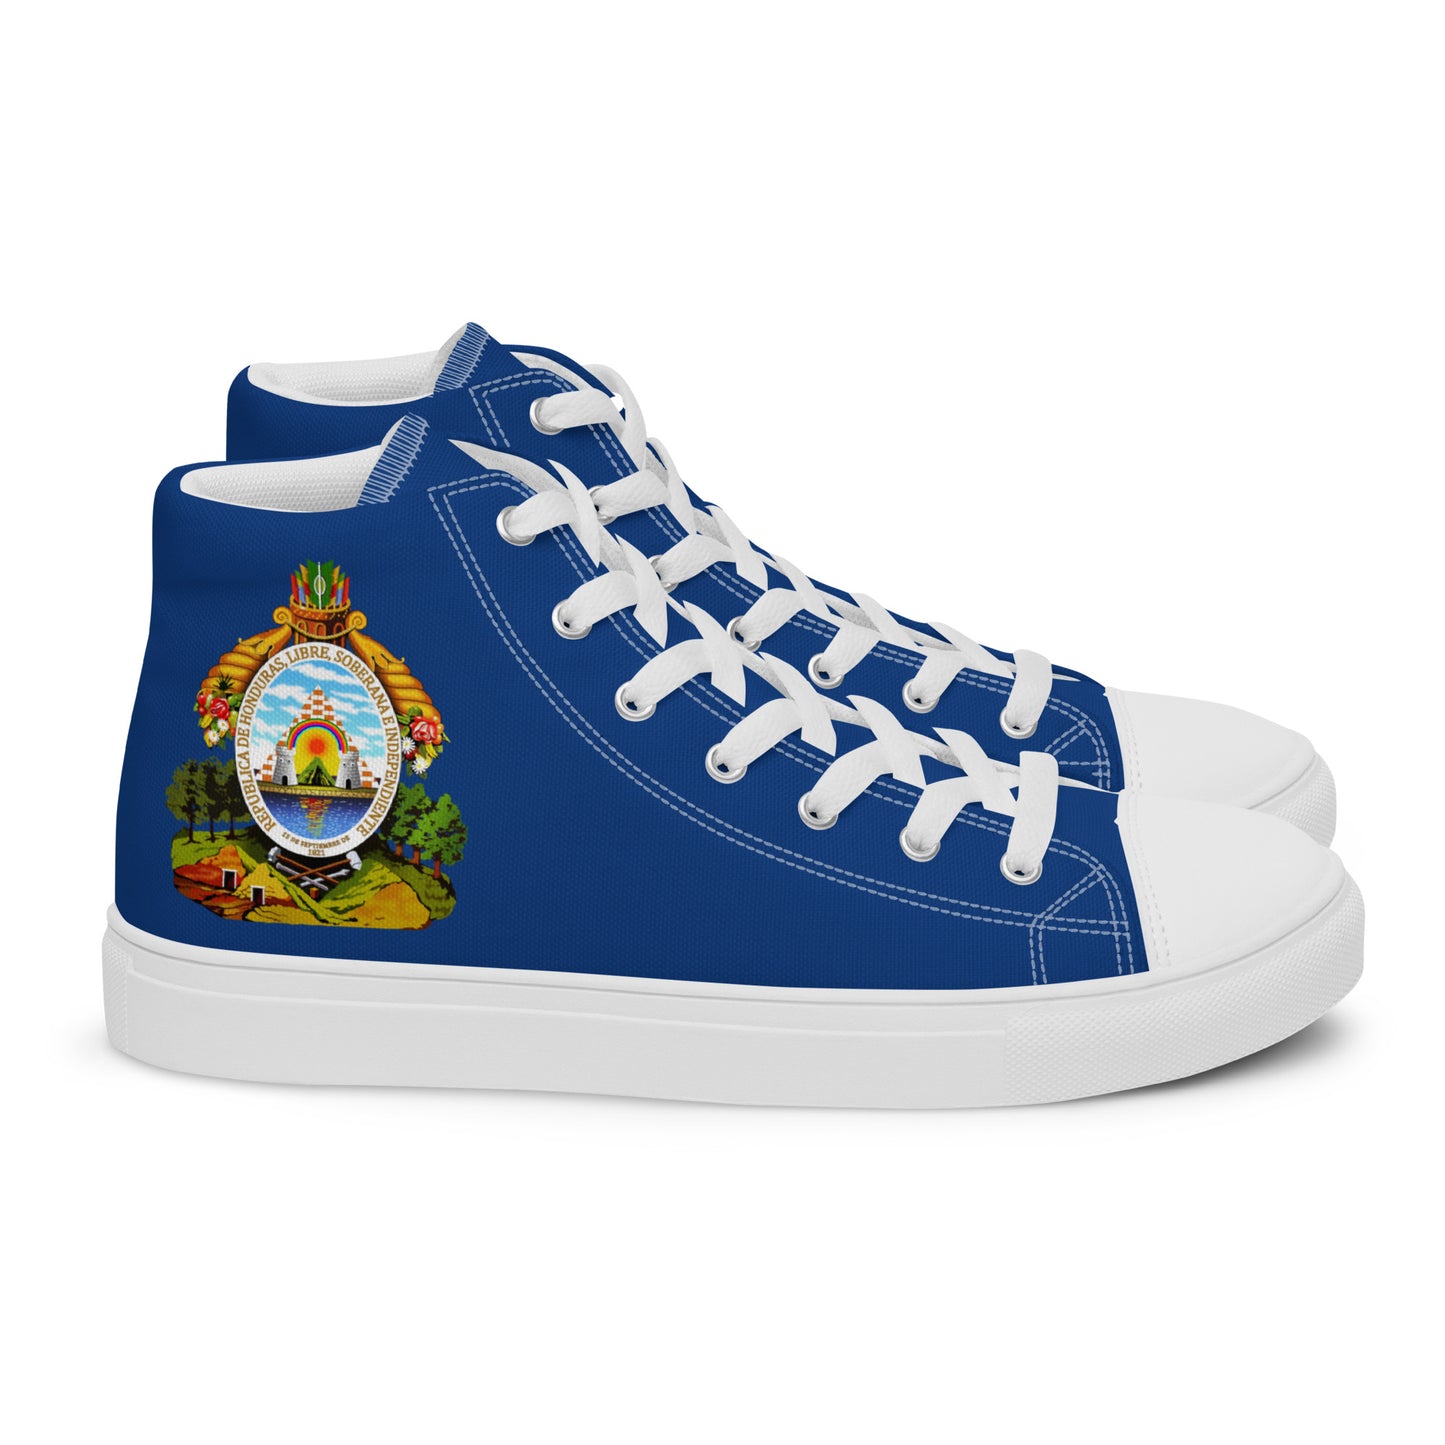 Honduras - Women - Blue - High top shoes